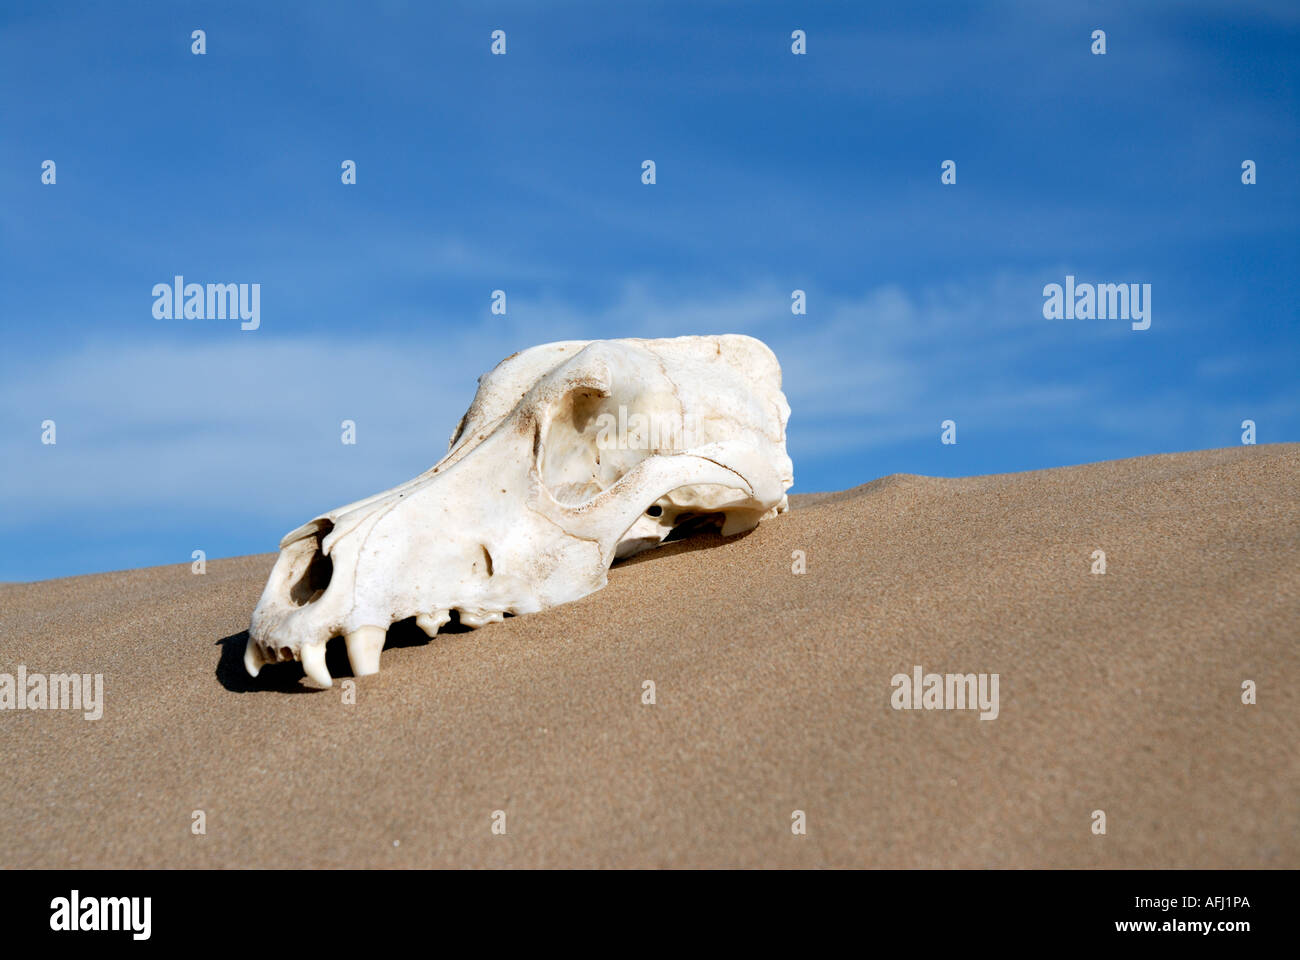 Dead animal skull in desert Stock Photo - Alamy